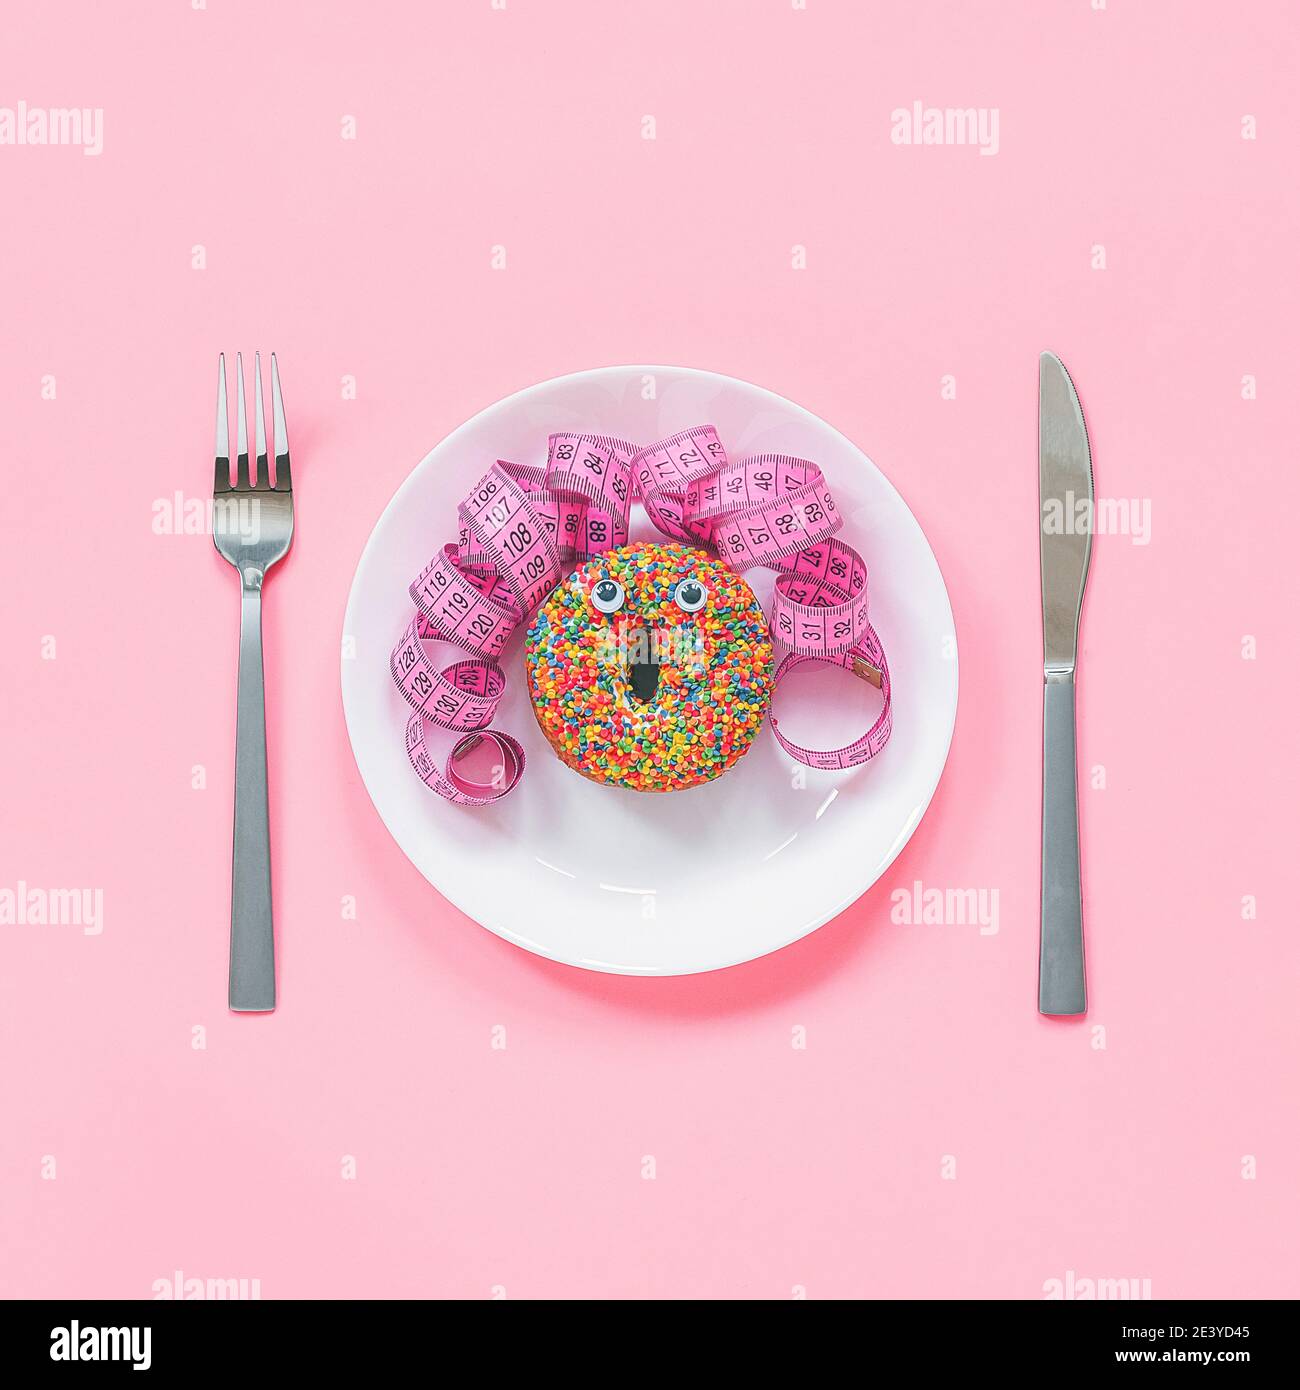 Abstrait visage drôle de la femme fait donut avec les yeux et les cheveux  du centimètre ruban sur l'assiette, coutellerie sur fond rose. Restauration  rapide, engraissement et inhealt Photo Stock - Alamy